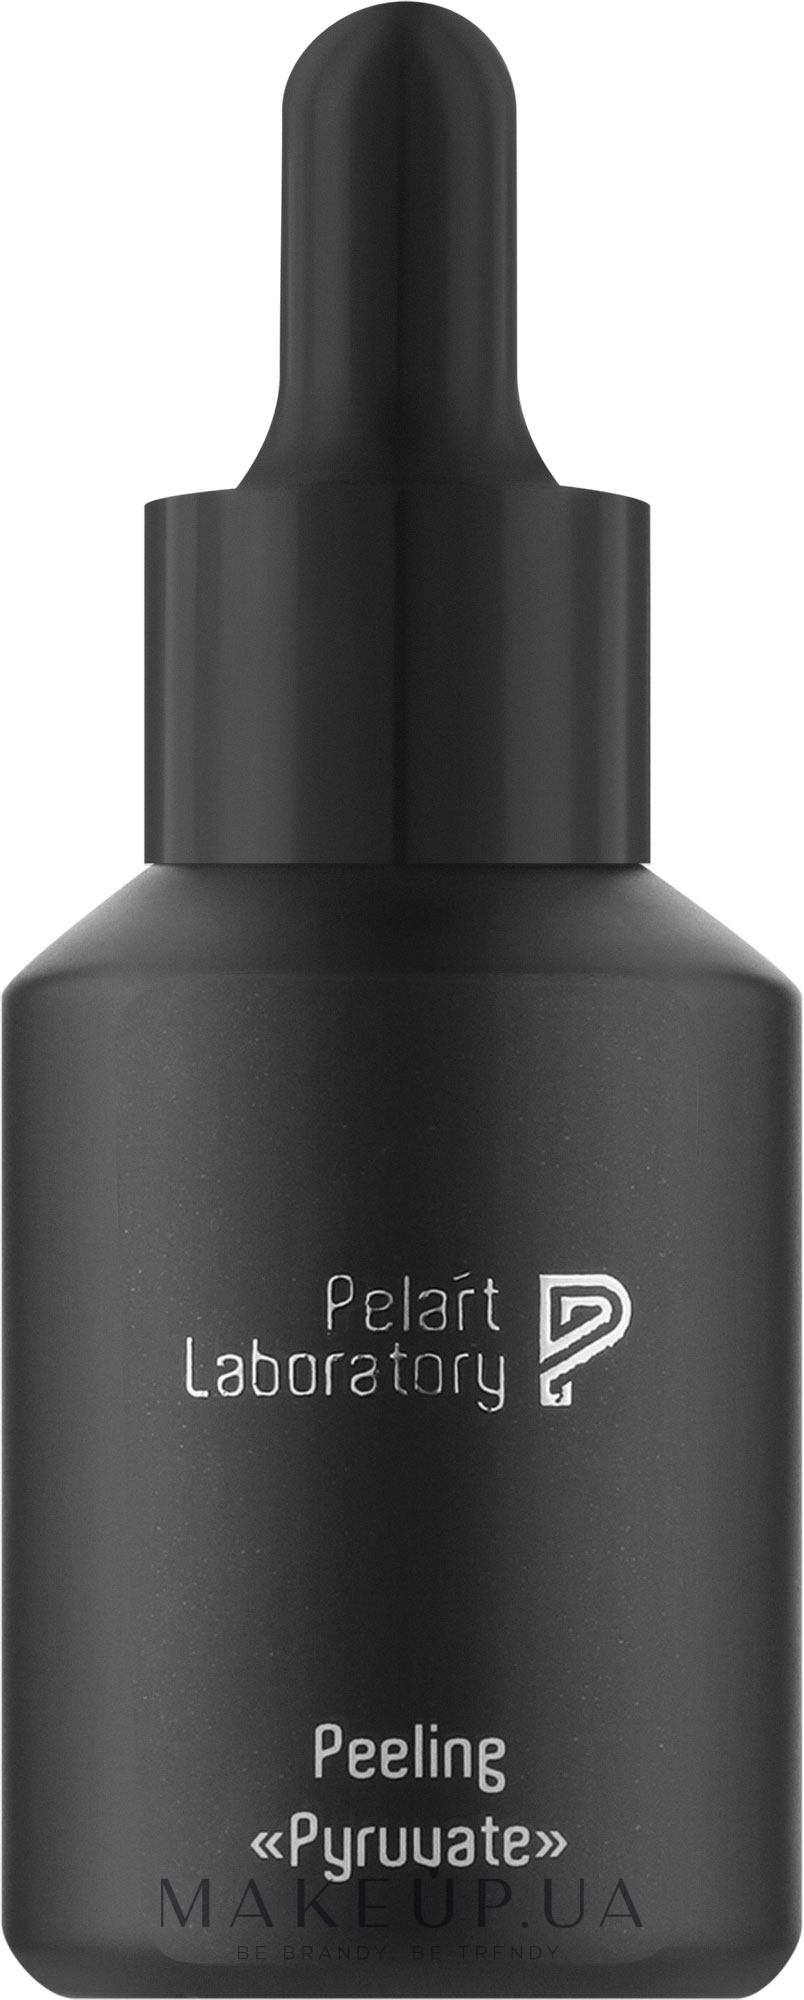 Пилинг с пировиноградной кислотой для лица - Pelart Laboratory Pyruuate Peeling — фото 30ml